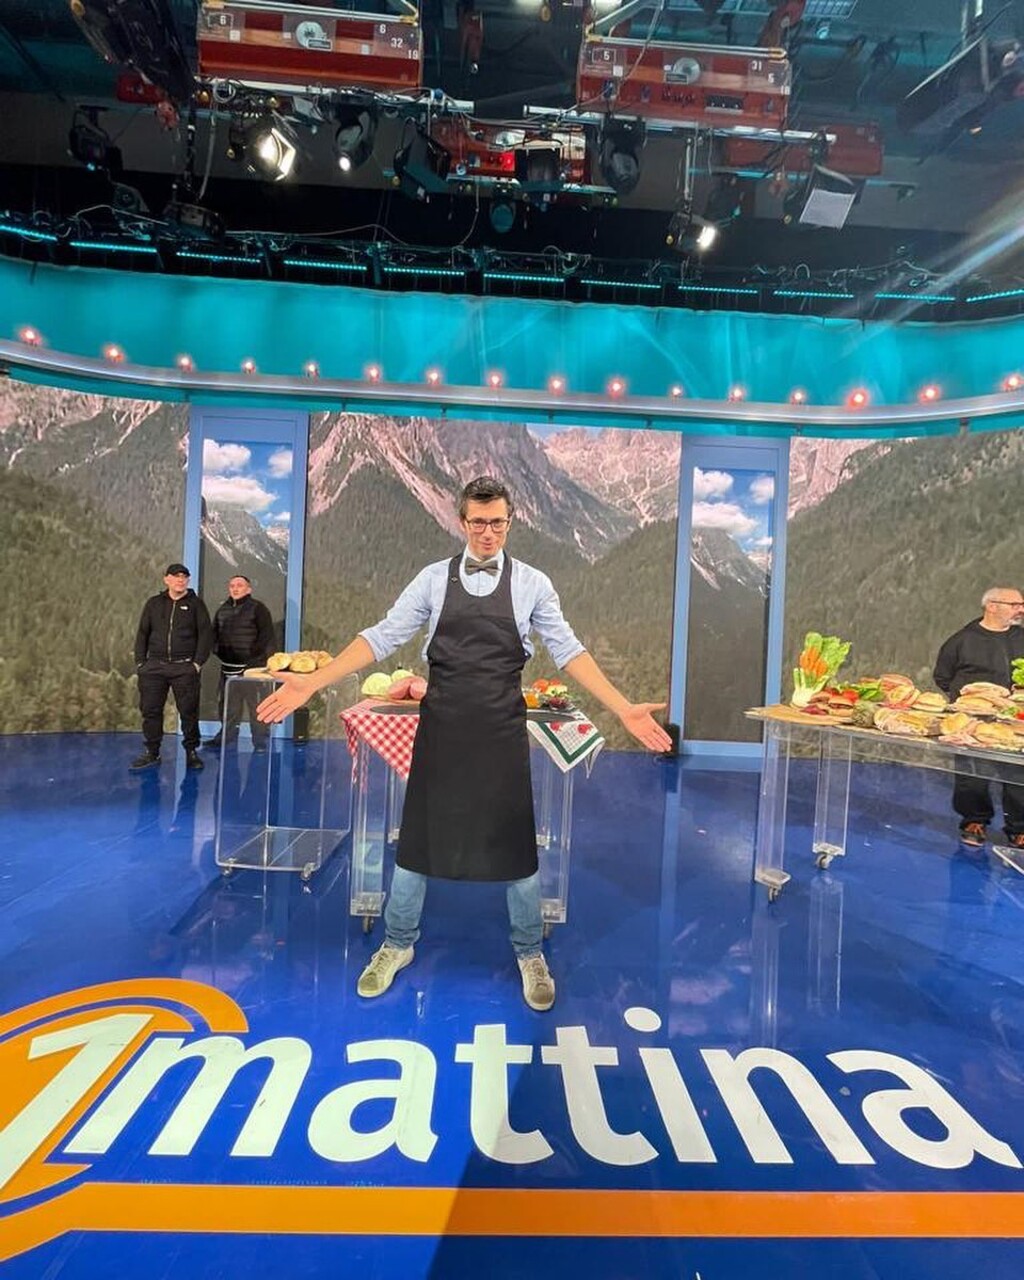 Գուրման սենդվիչ. խոհարար/ոչ-խոհարար Դանիելե Ռեպոնիի հյուրը RAI հեռուստատեսային «1Mattina» հաղորդման ժամանակ